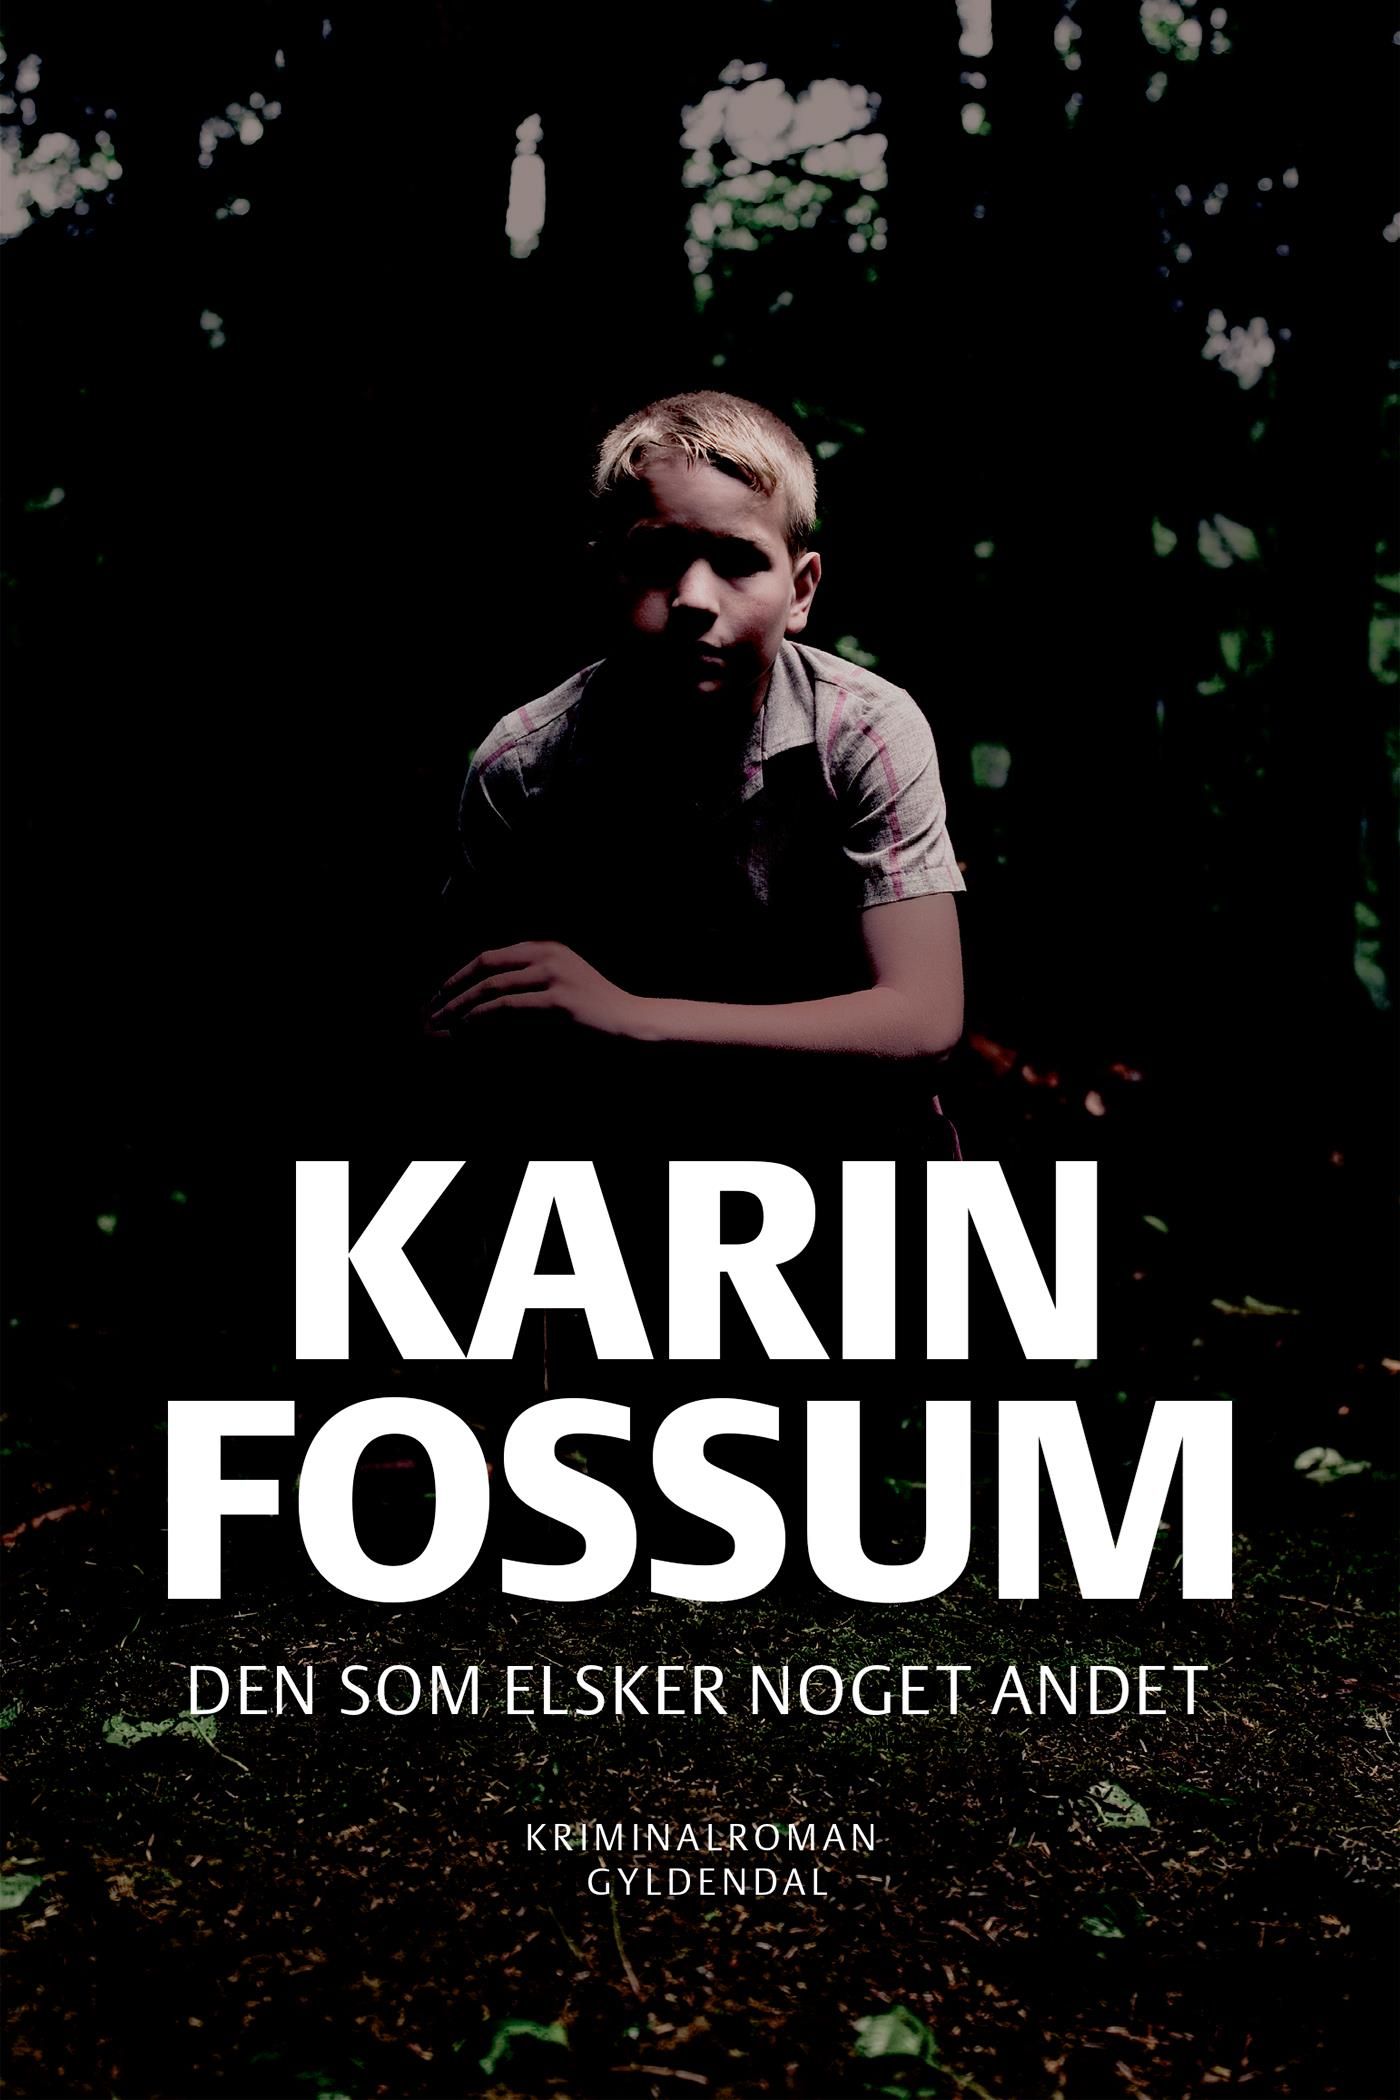 Den som elsker noget andet, e-bog af Karin Fossum